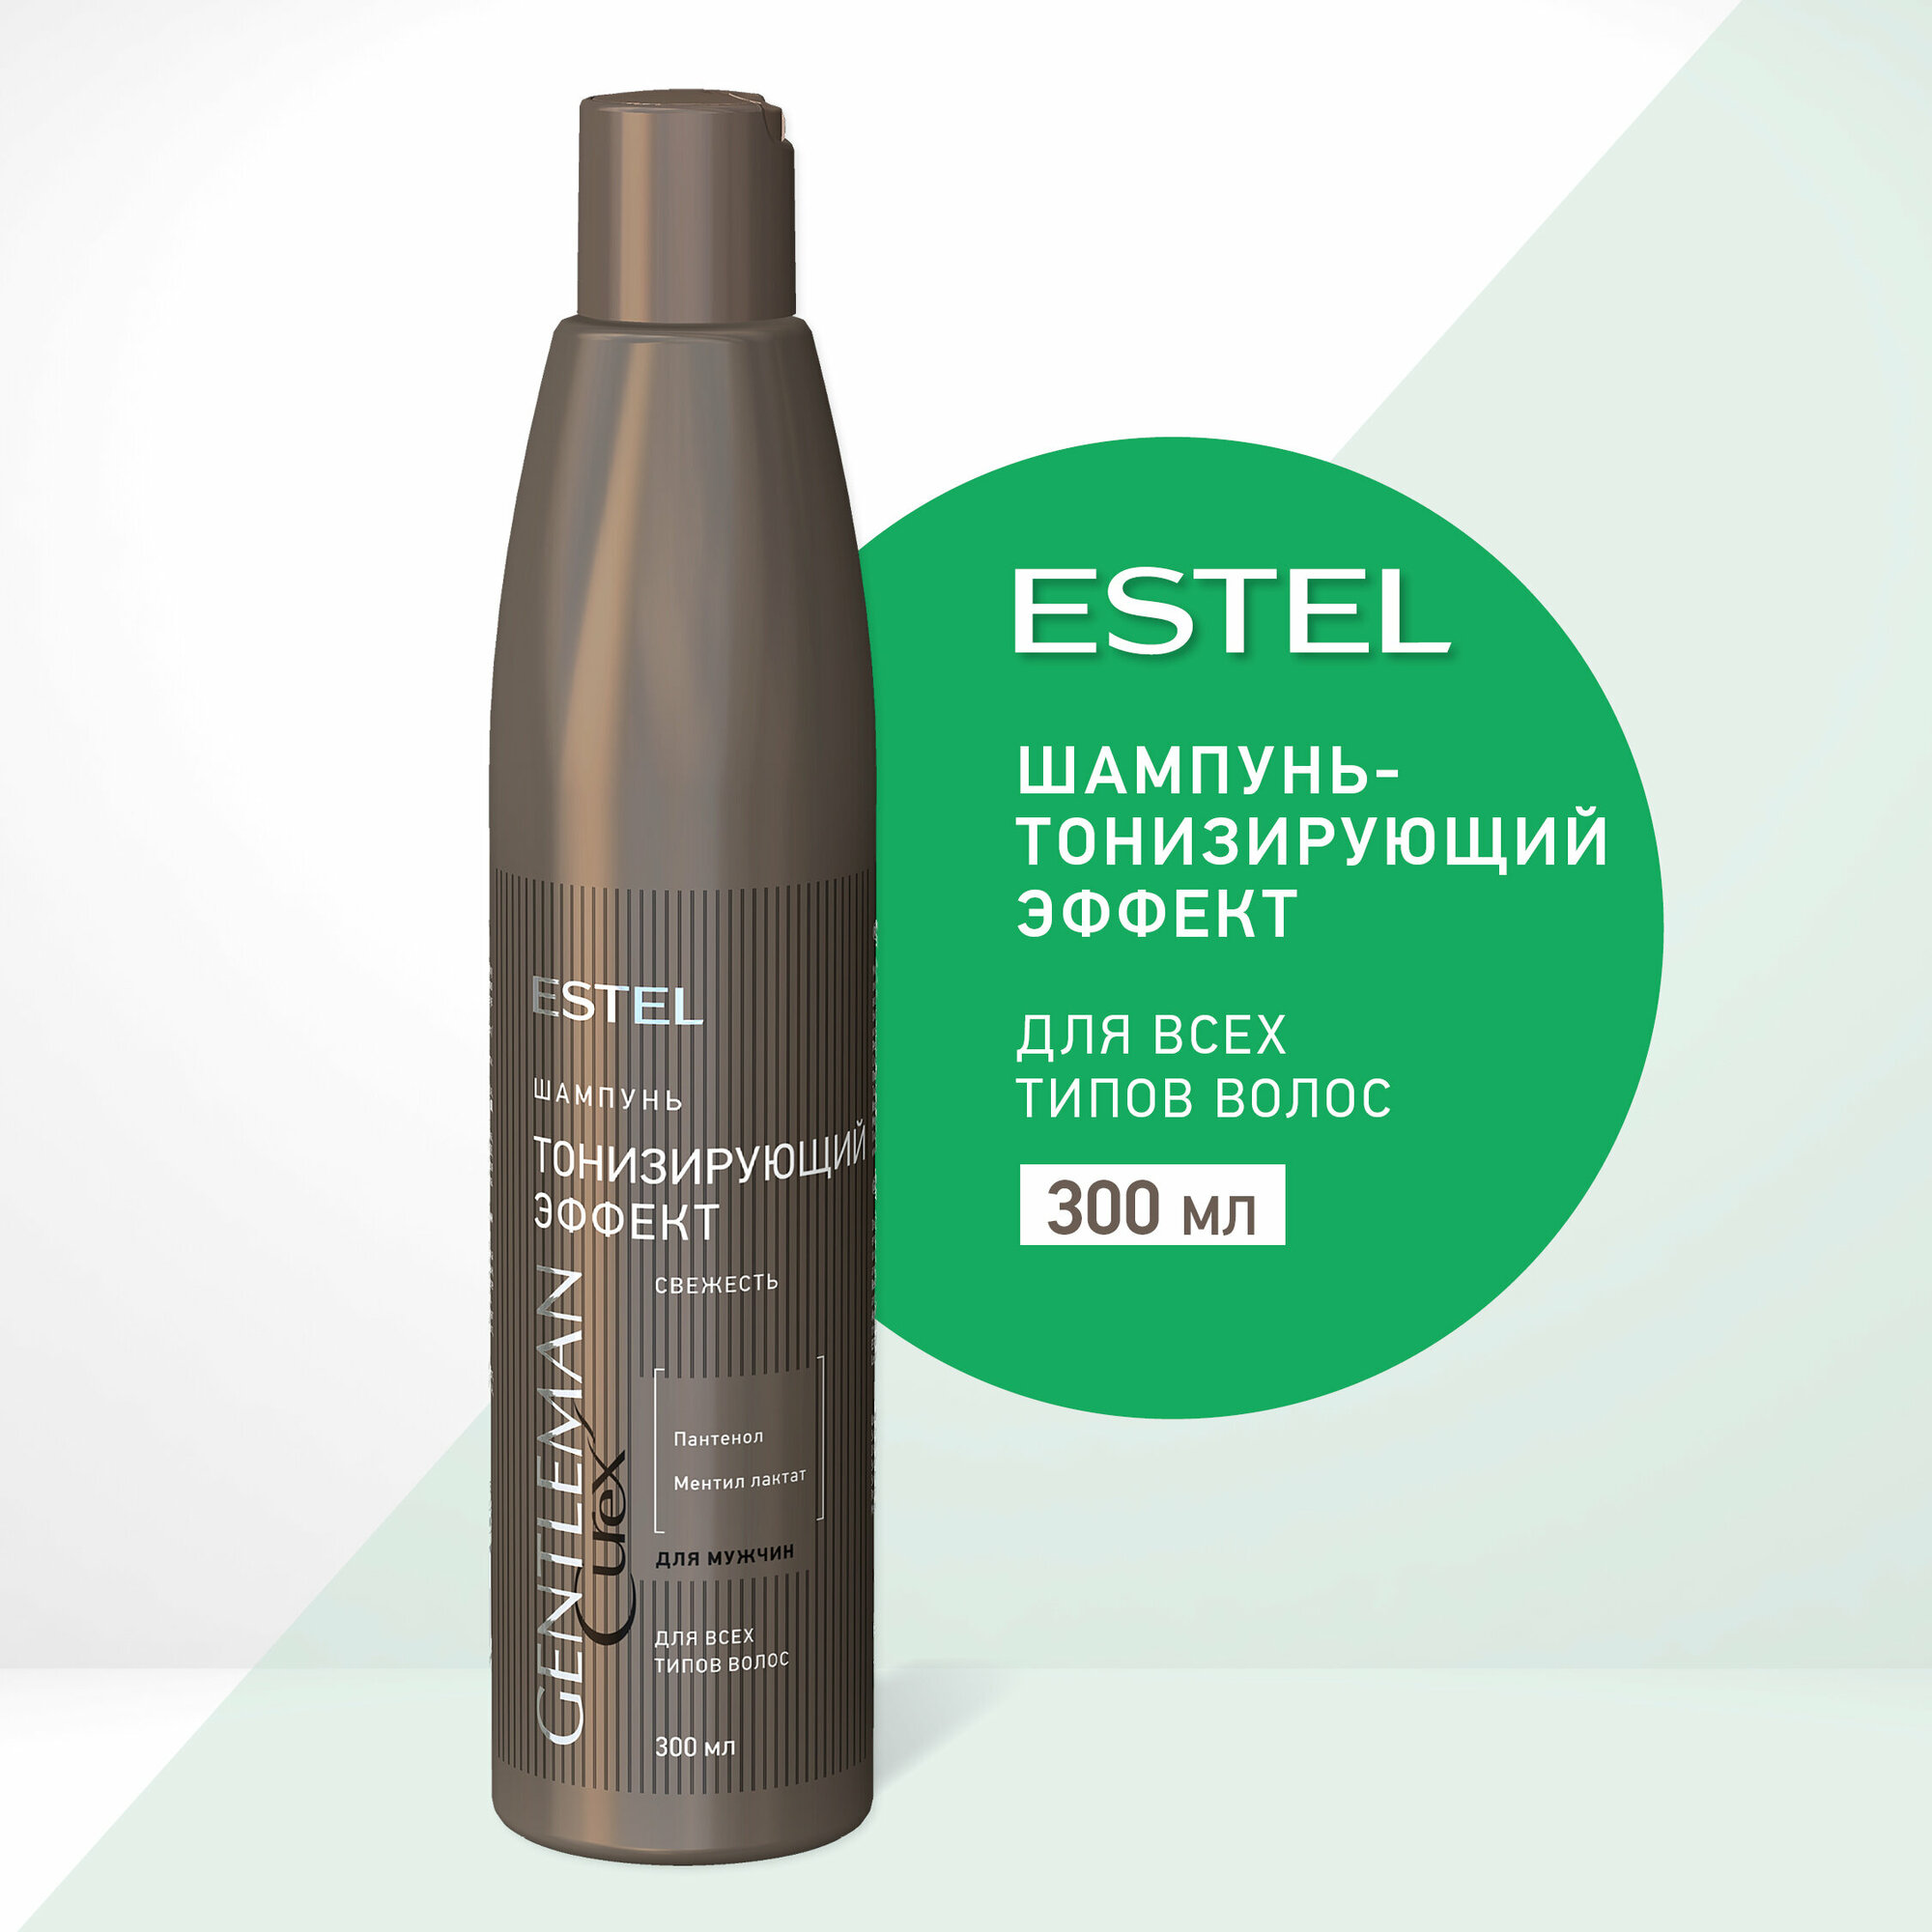 Шампунь Estel curex gentleman тонизирующий эффект для всех типов волос 300 мл